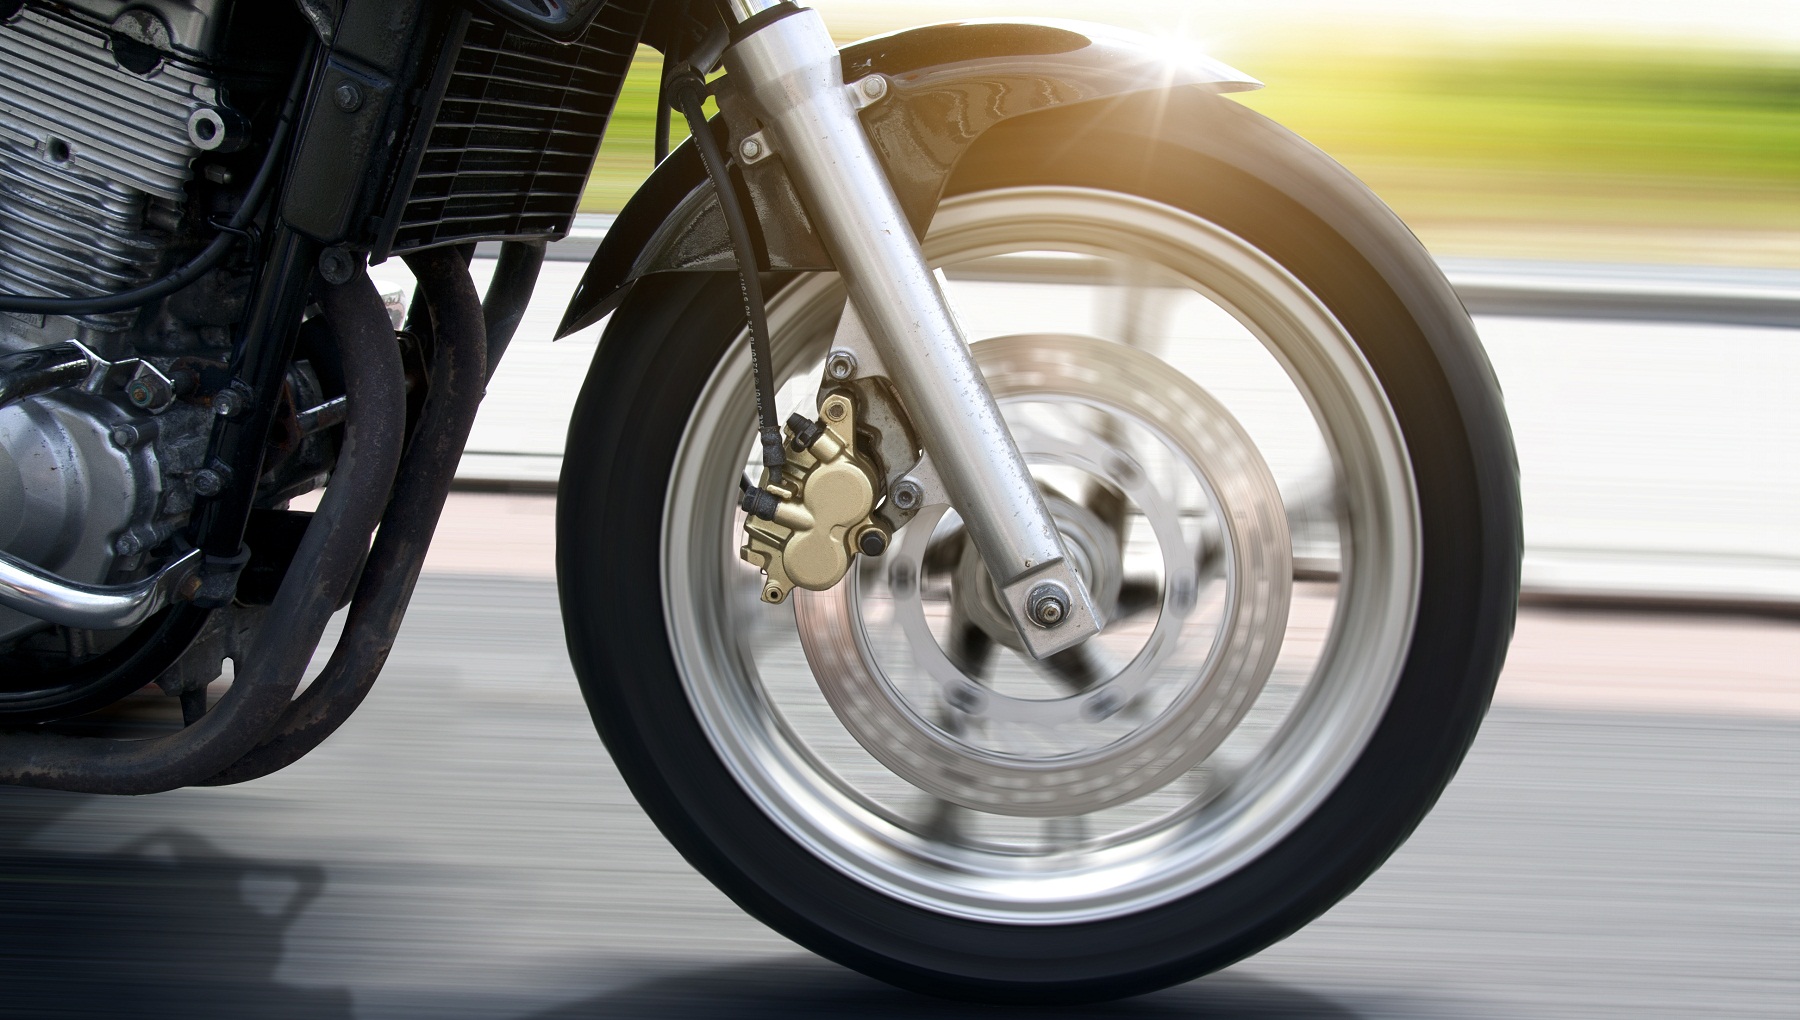 Comment choisir le pneu de sa moto ?